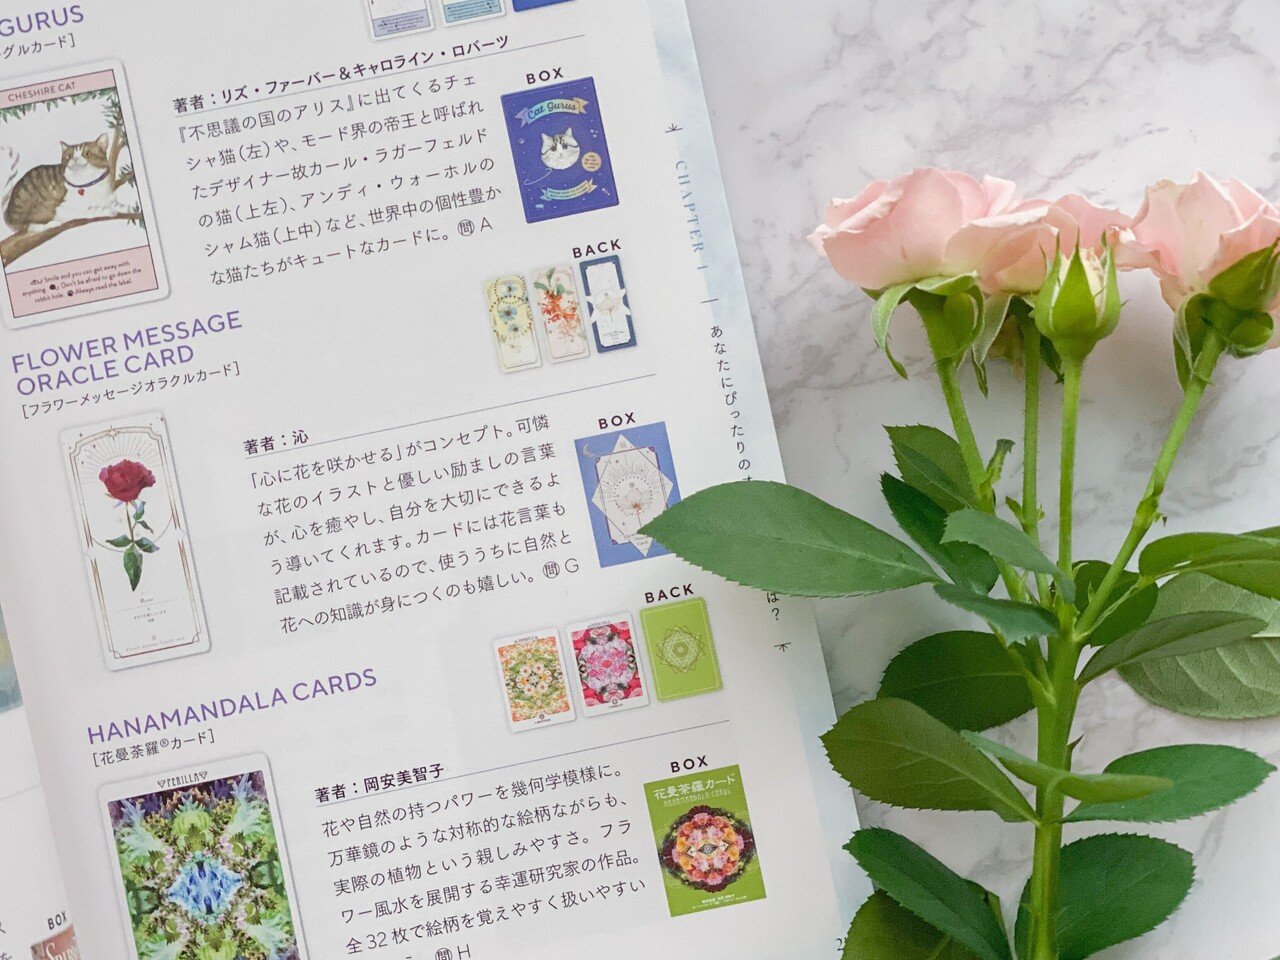 森村あこ先生の新書 いちばんやさしいオラクルカードリーディングの教科書 にフラワーを掲載していただきました Flower Message Note